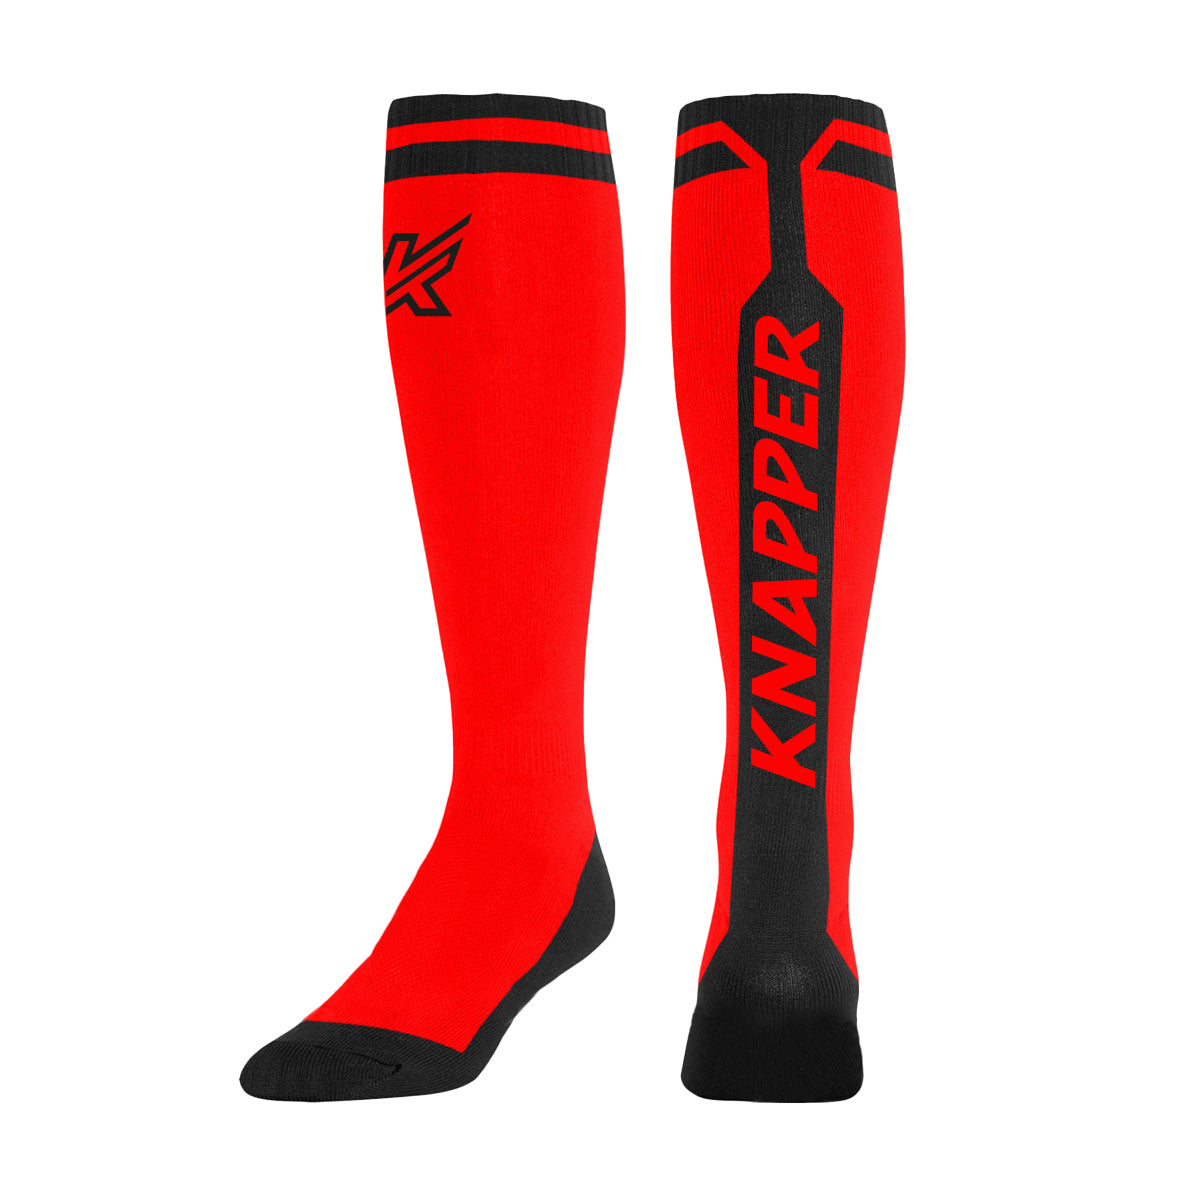 Kappa Spolf Sock Sleeves - Red